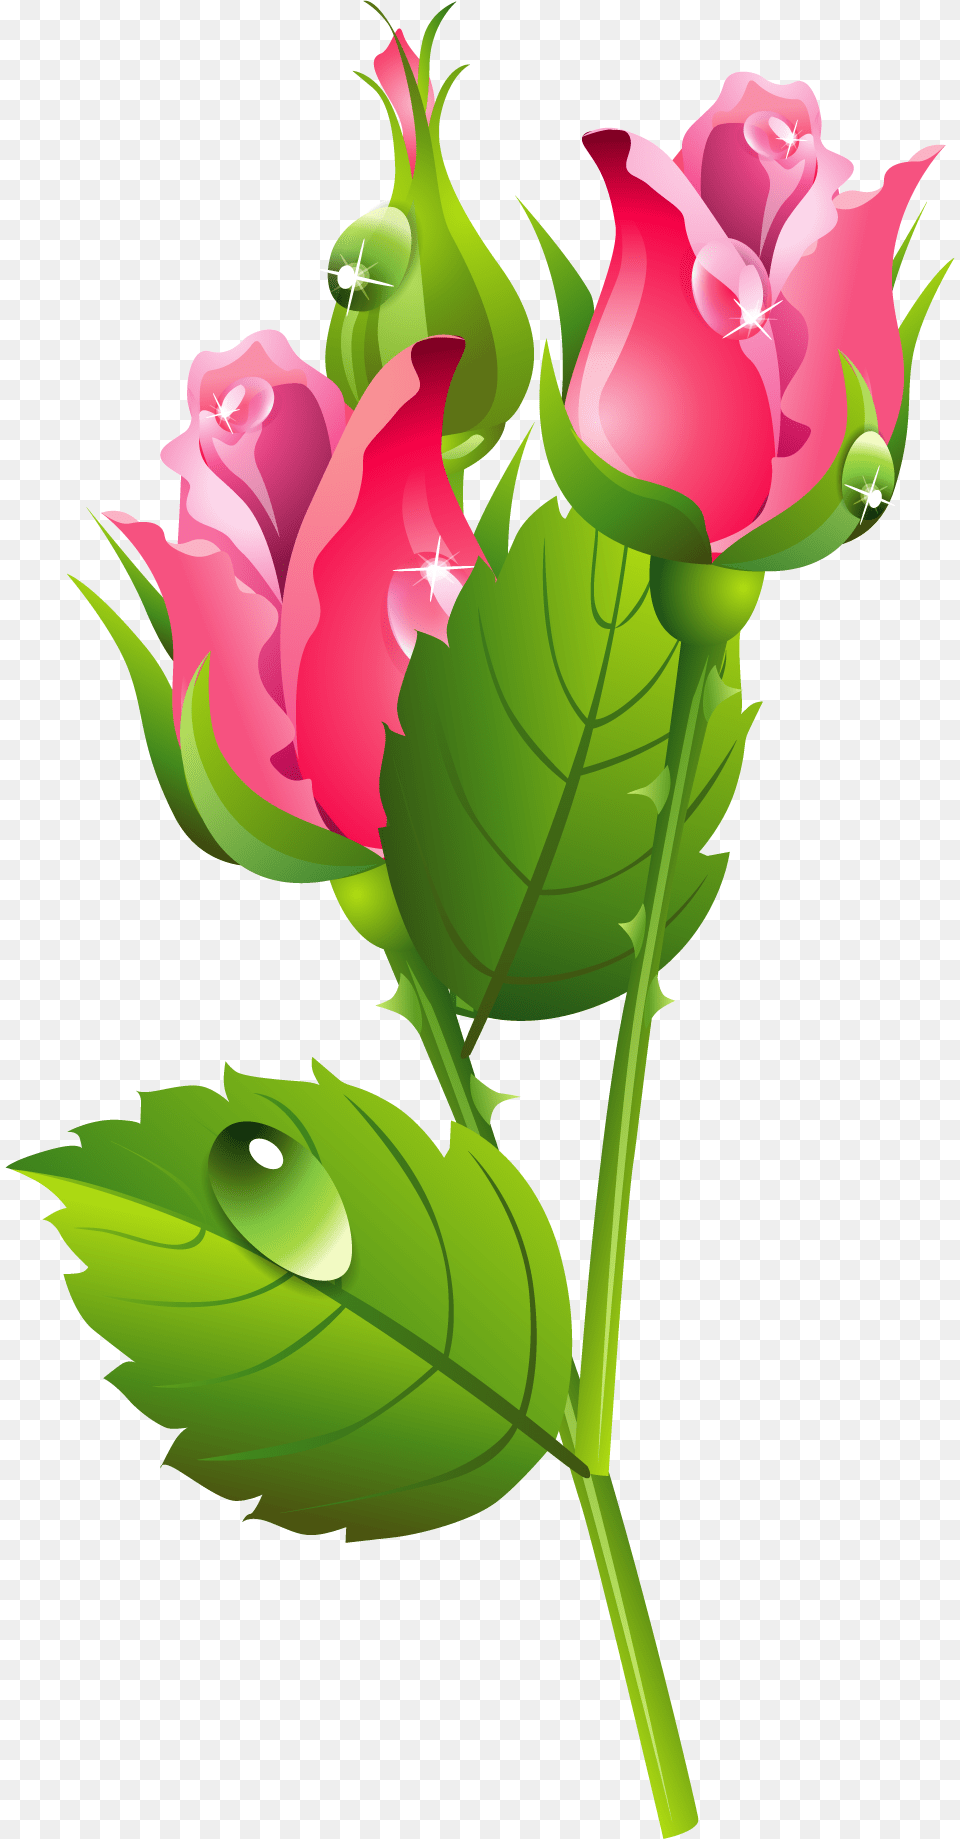 Romantic Pink Flower Border Image Illustration, Plant, Rose, Leaf Free Transparent Png